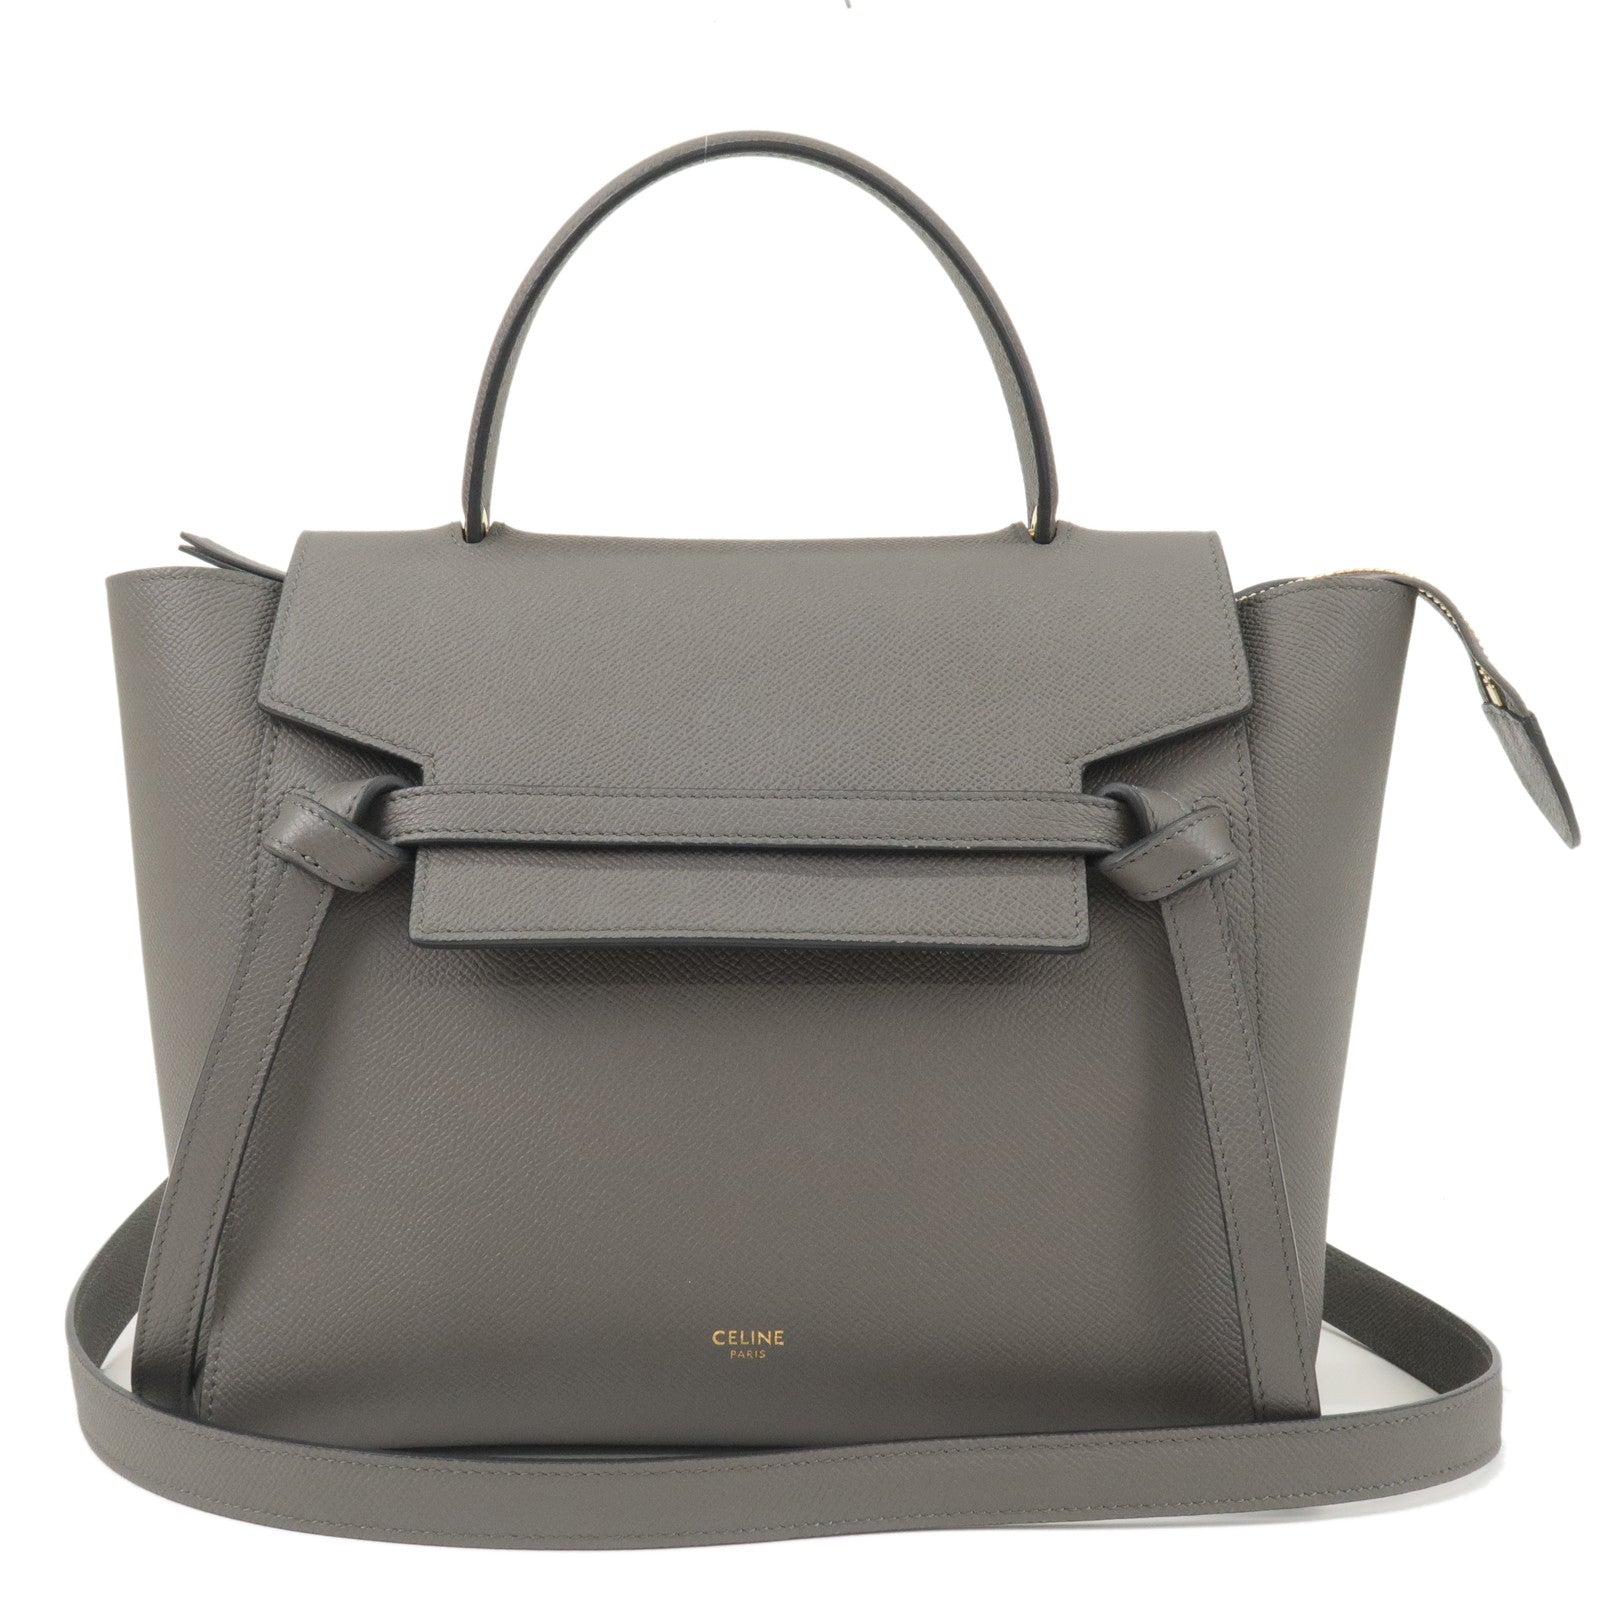 CELINE-Leather-Belt-Bag-Micro-2Way-Bag-Hand-Bag-Shoulder-Bag-Gray